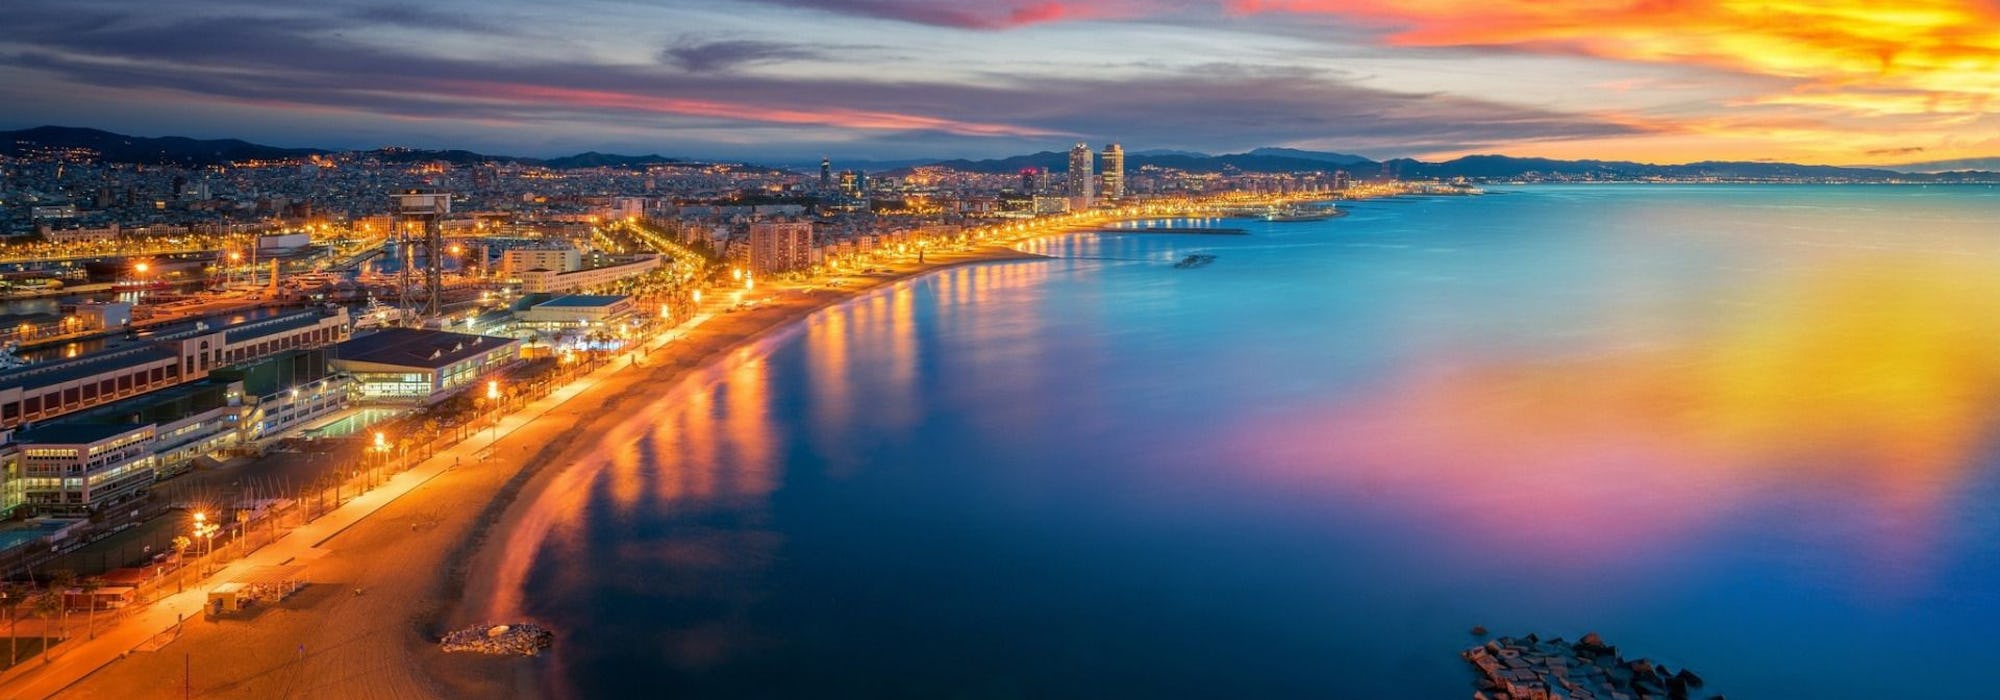 Croisière en Méditerranée - Barcelone